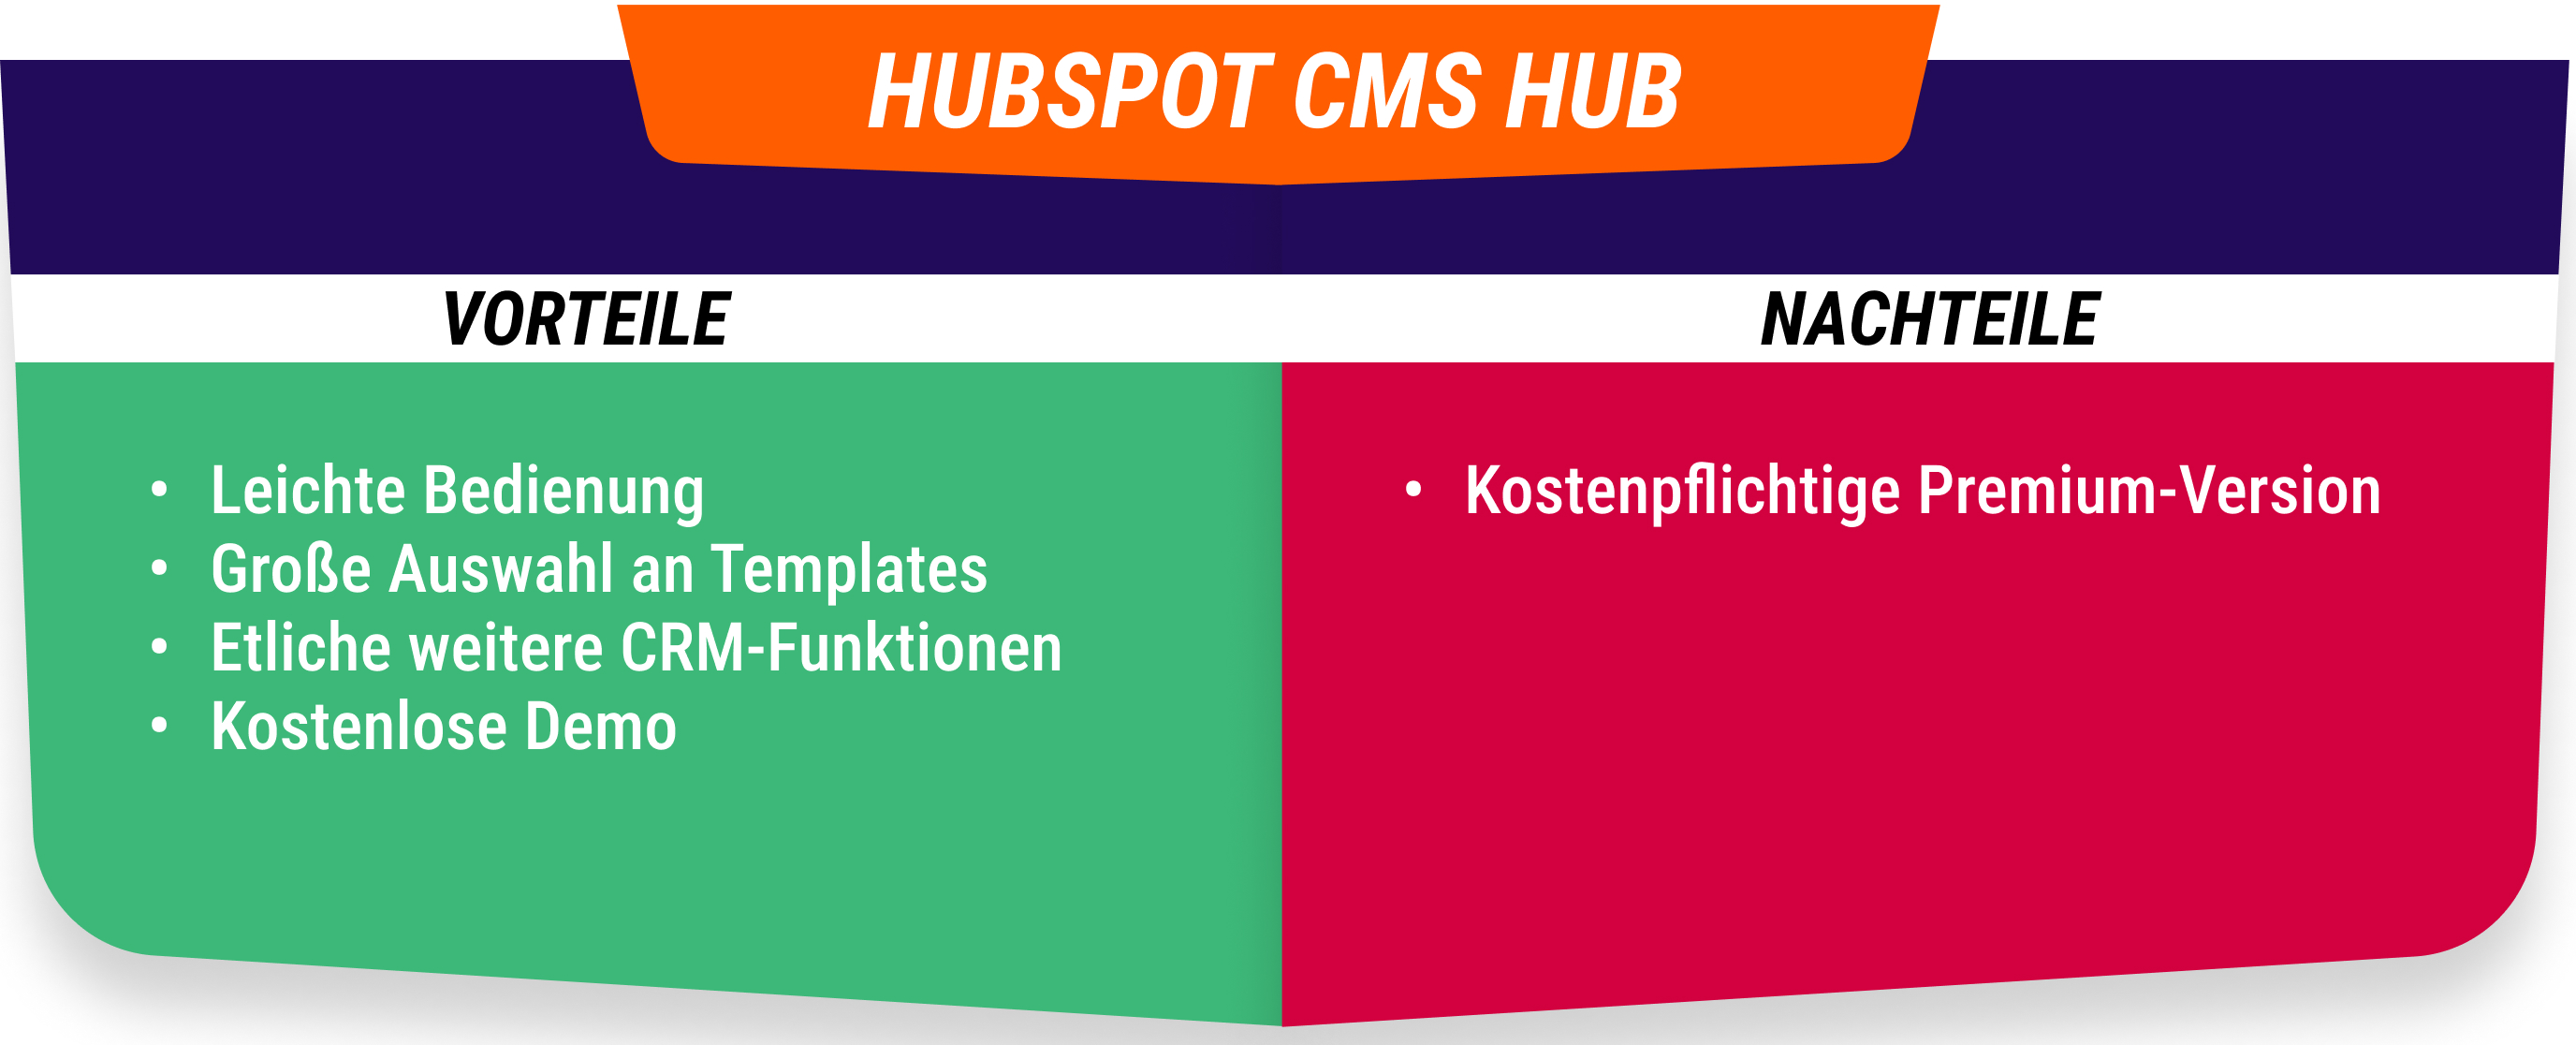 Vorteile und Nachteile vom HubSpot CMS Hub